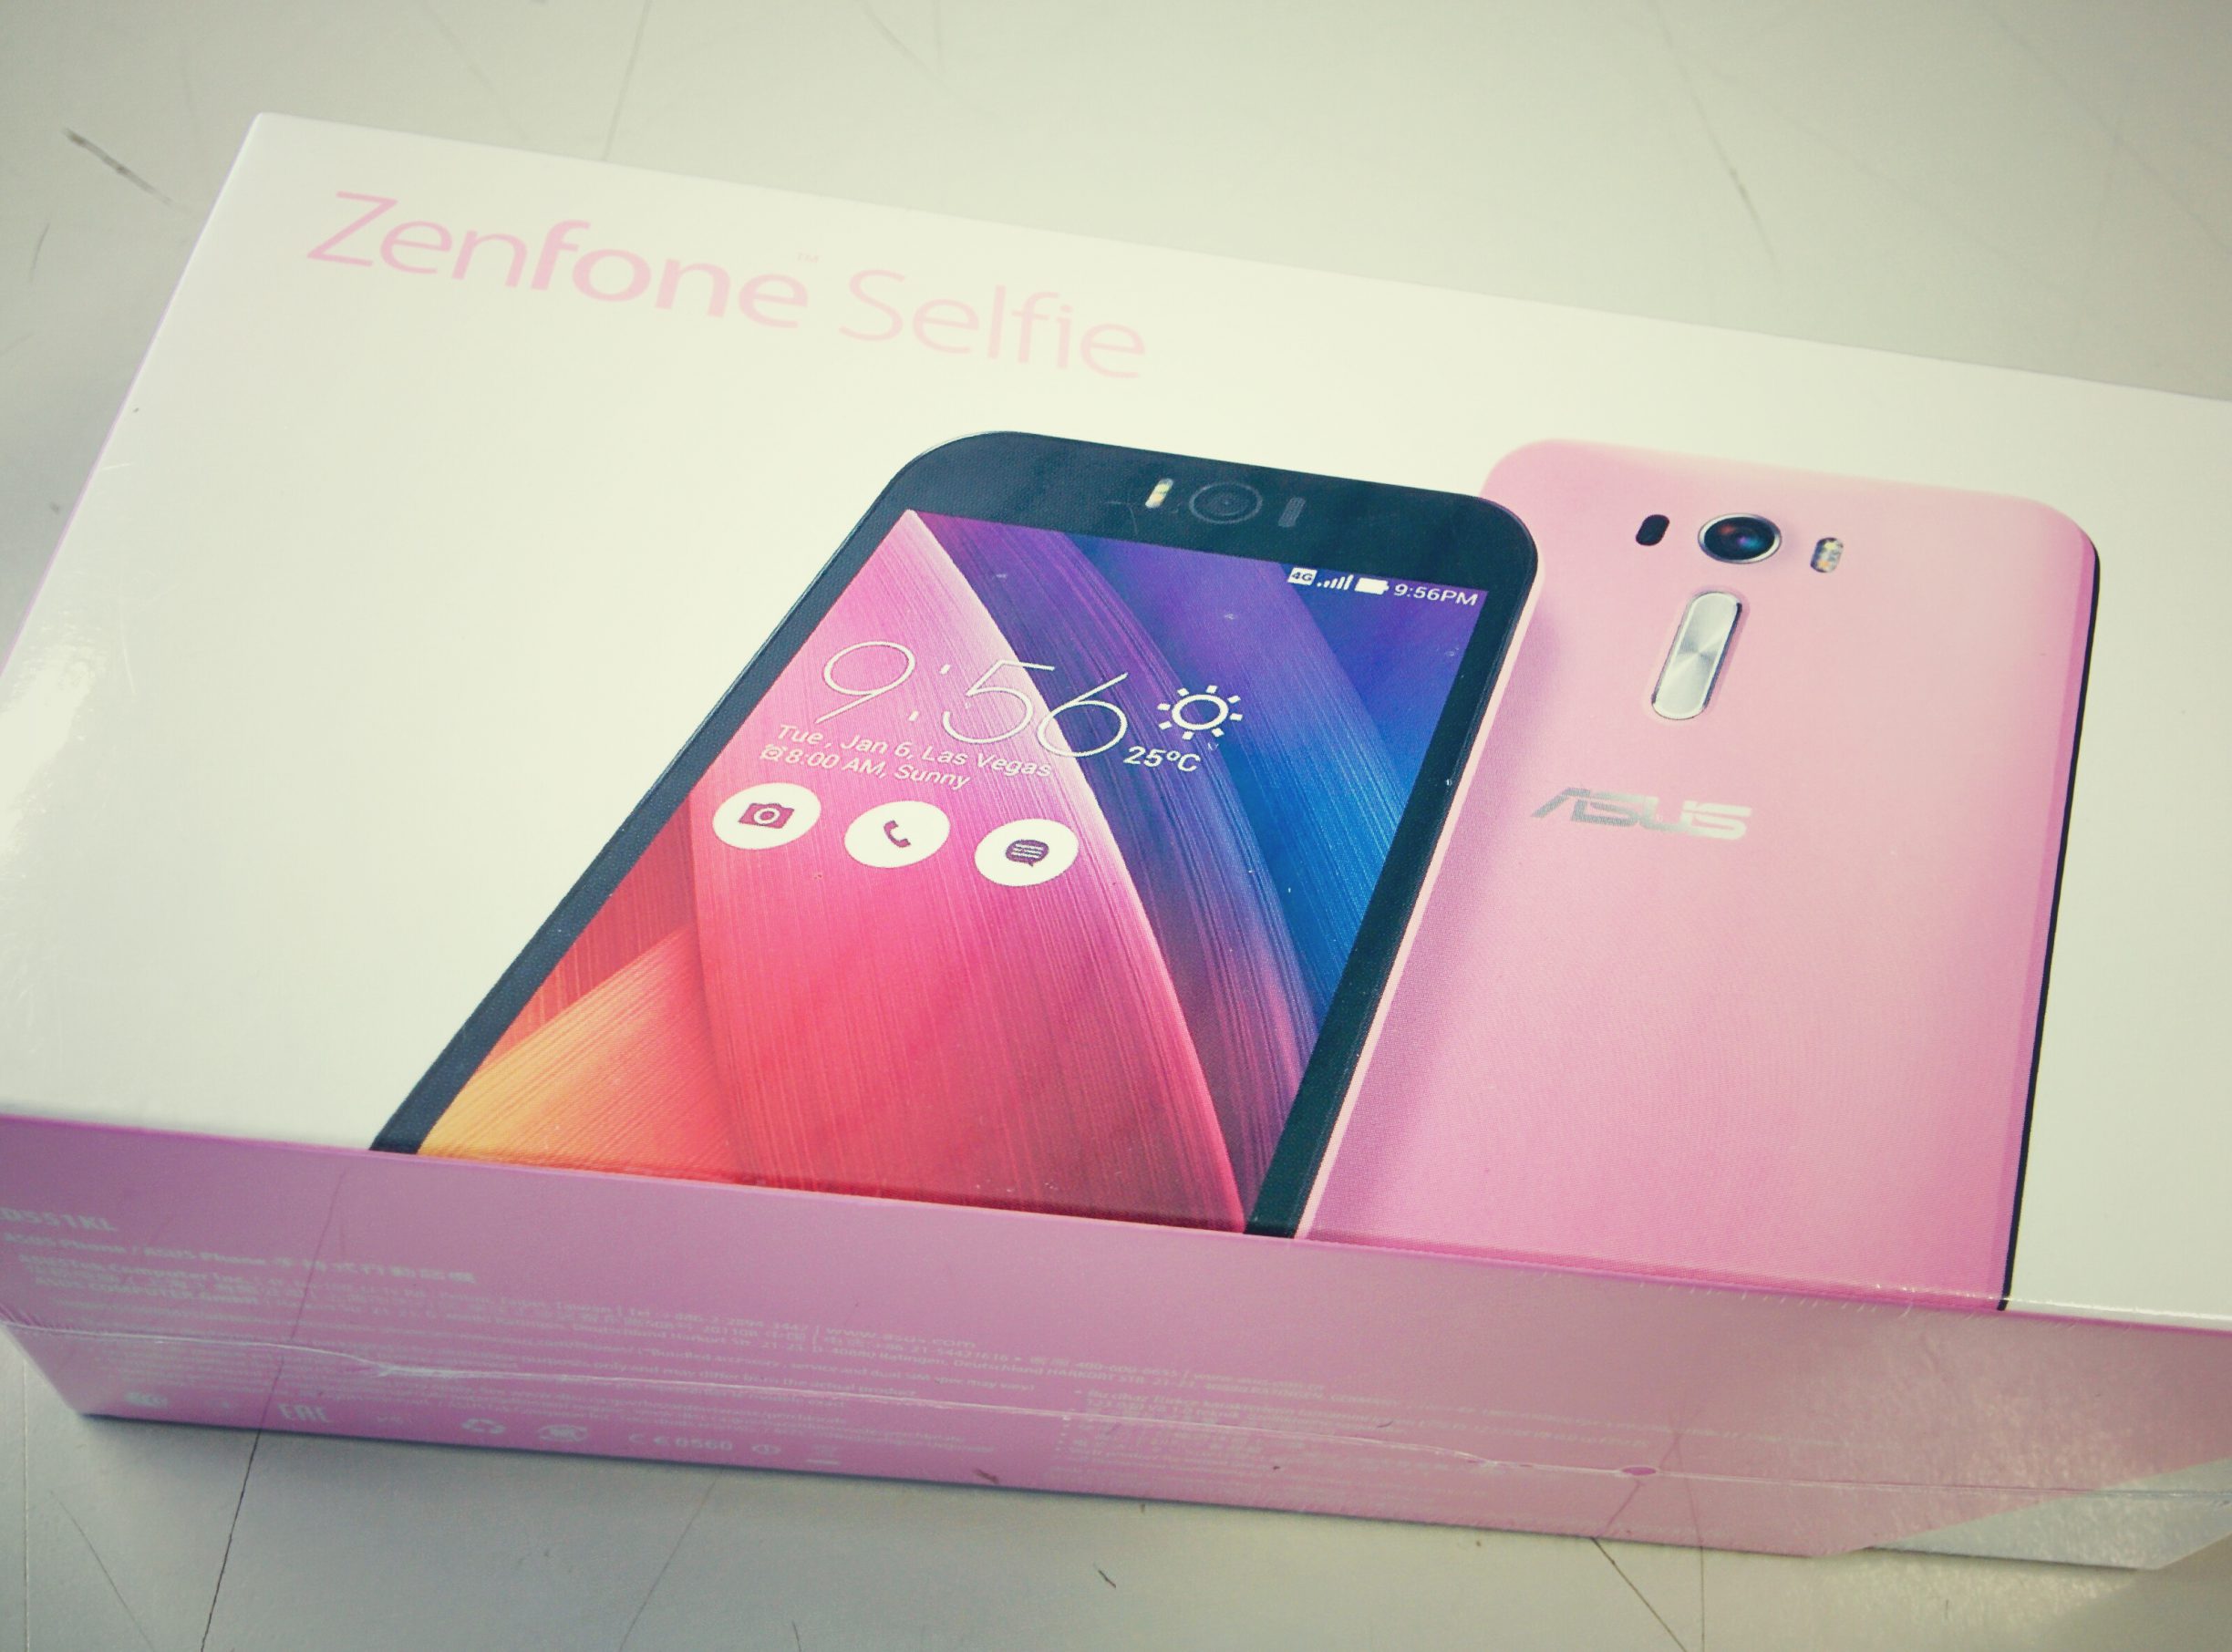 Asus Zenfone 2 - Selfie (ZD551KL)